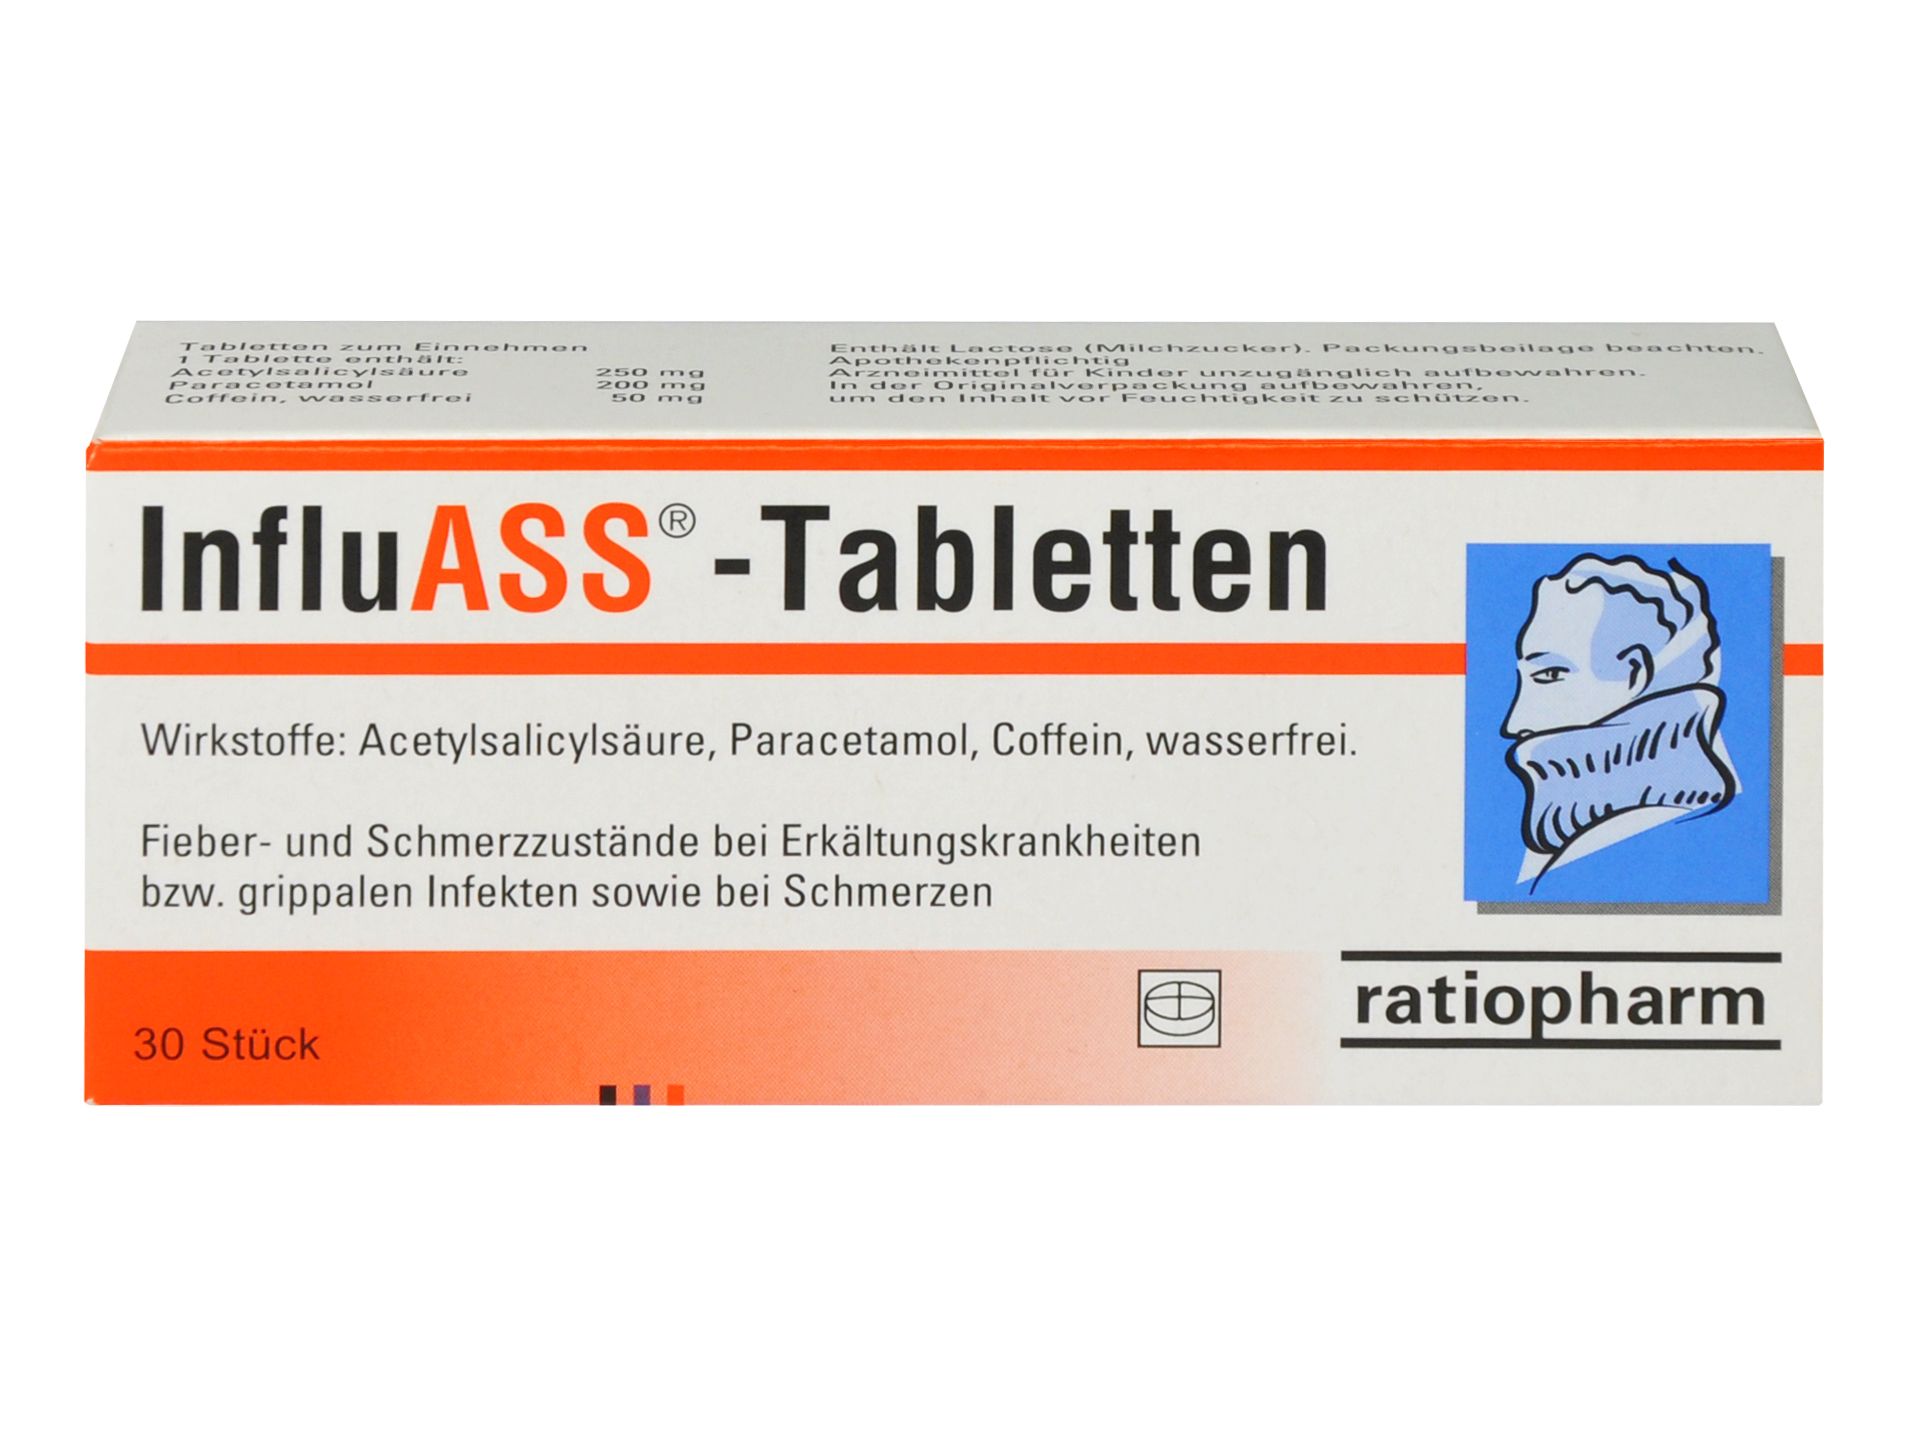 Abbildung InfluASS - Tabletten